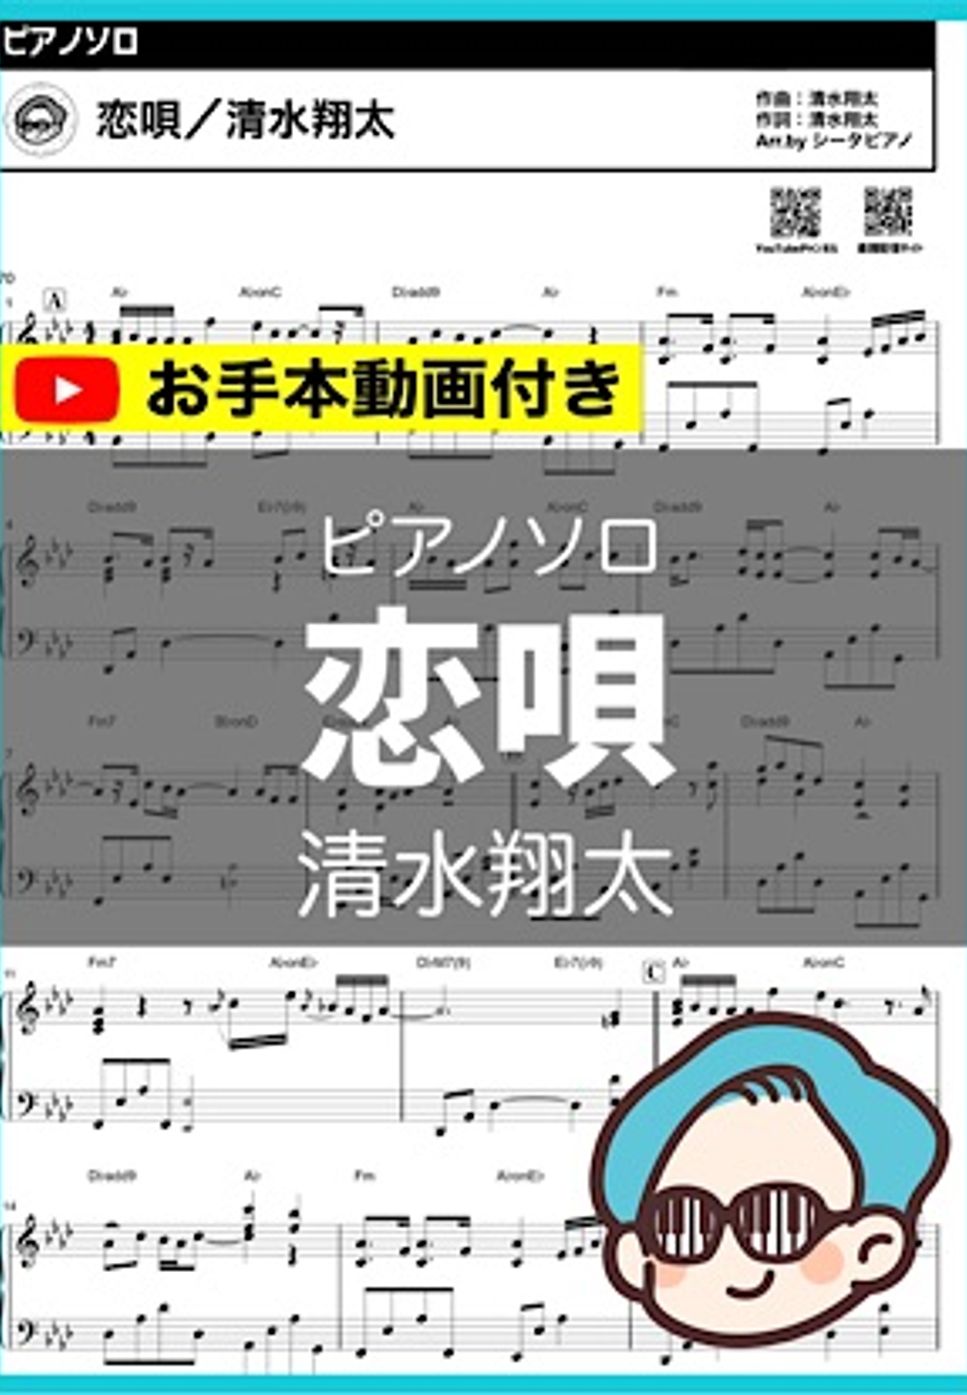 清水翔太 - 恋唄 by シータピアノ